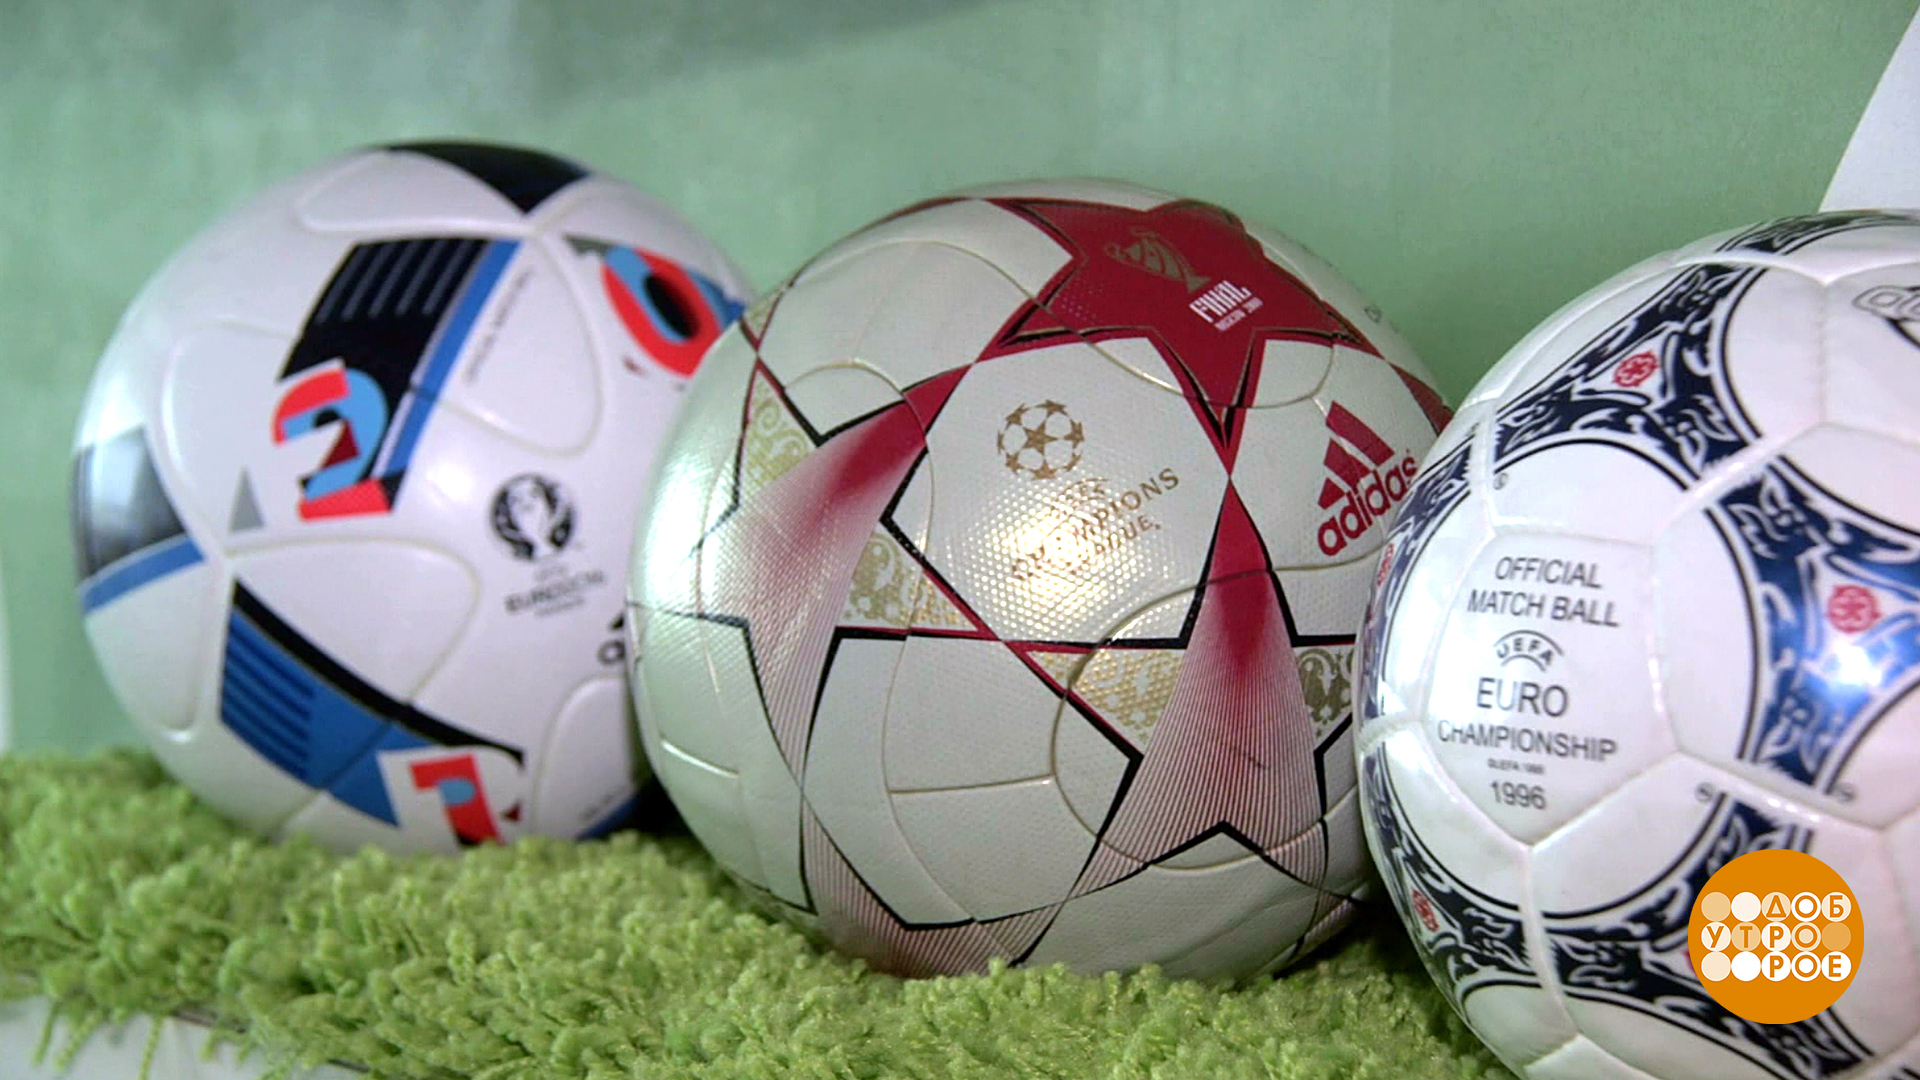 Включи видео мяч. Футбольные коллекционеры. Коллекционеры футбольных мячей. Коллекционеры футбольных мячей в России.